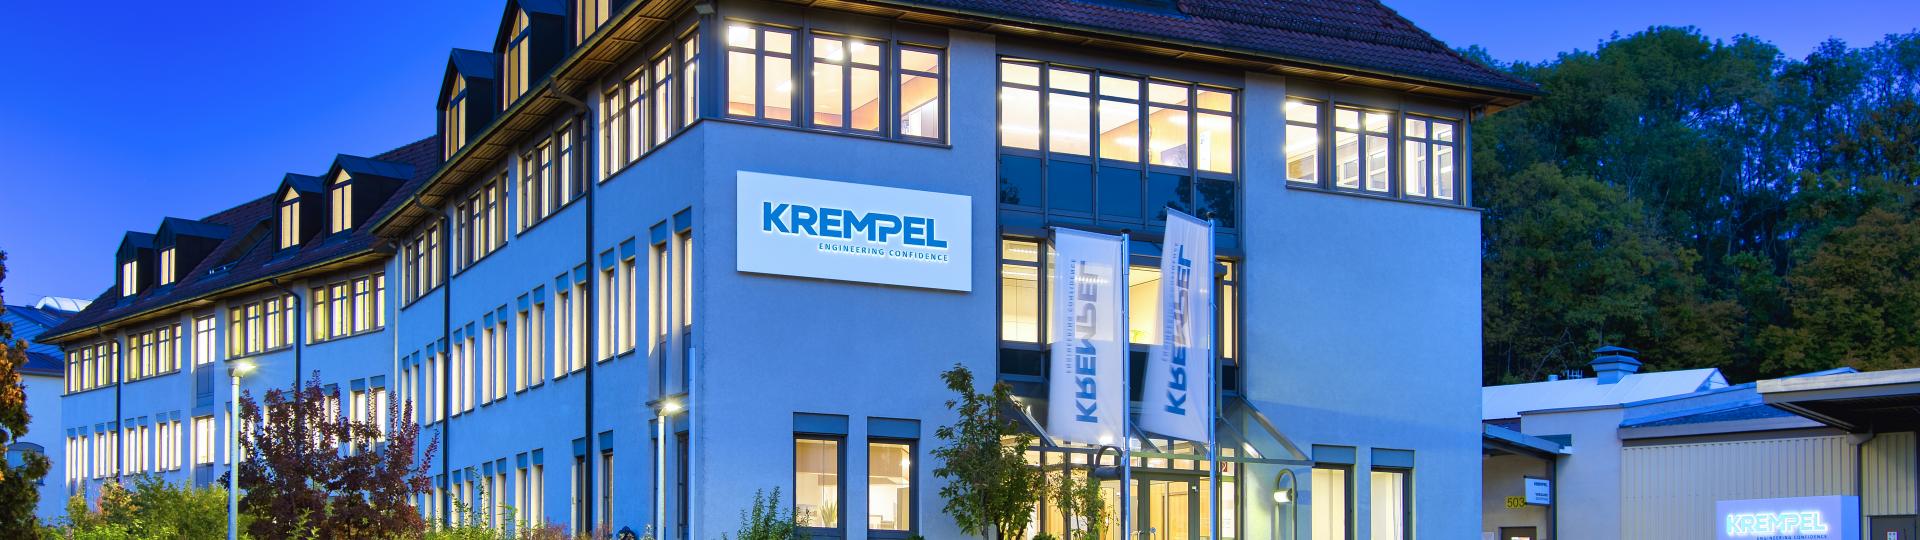 Company building Krempel Vaihingen/Enz